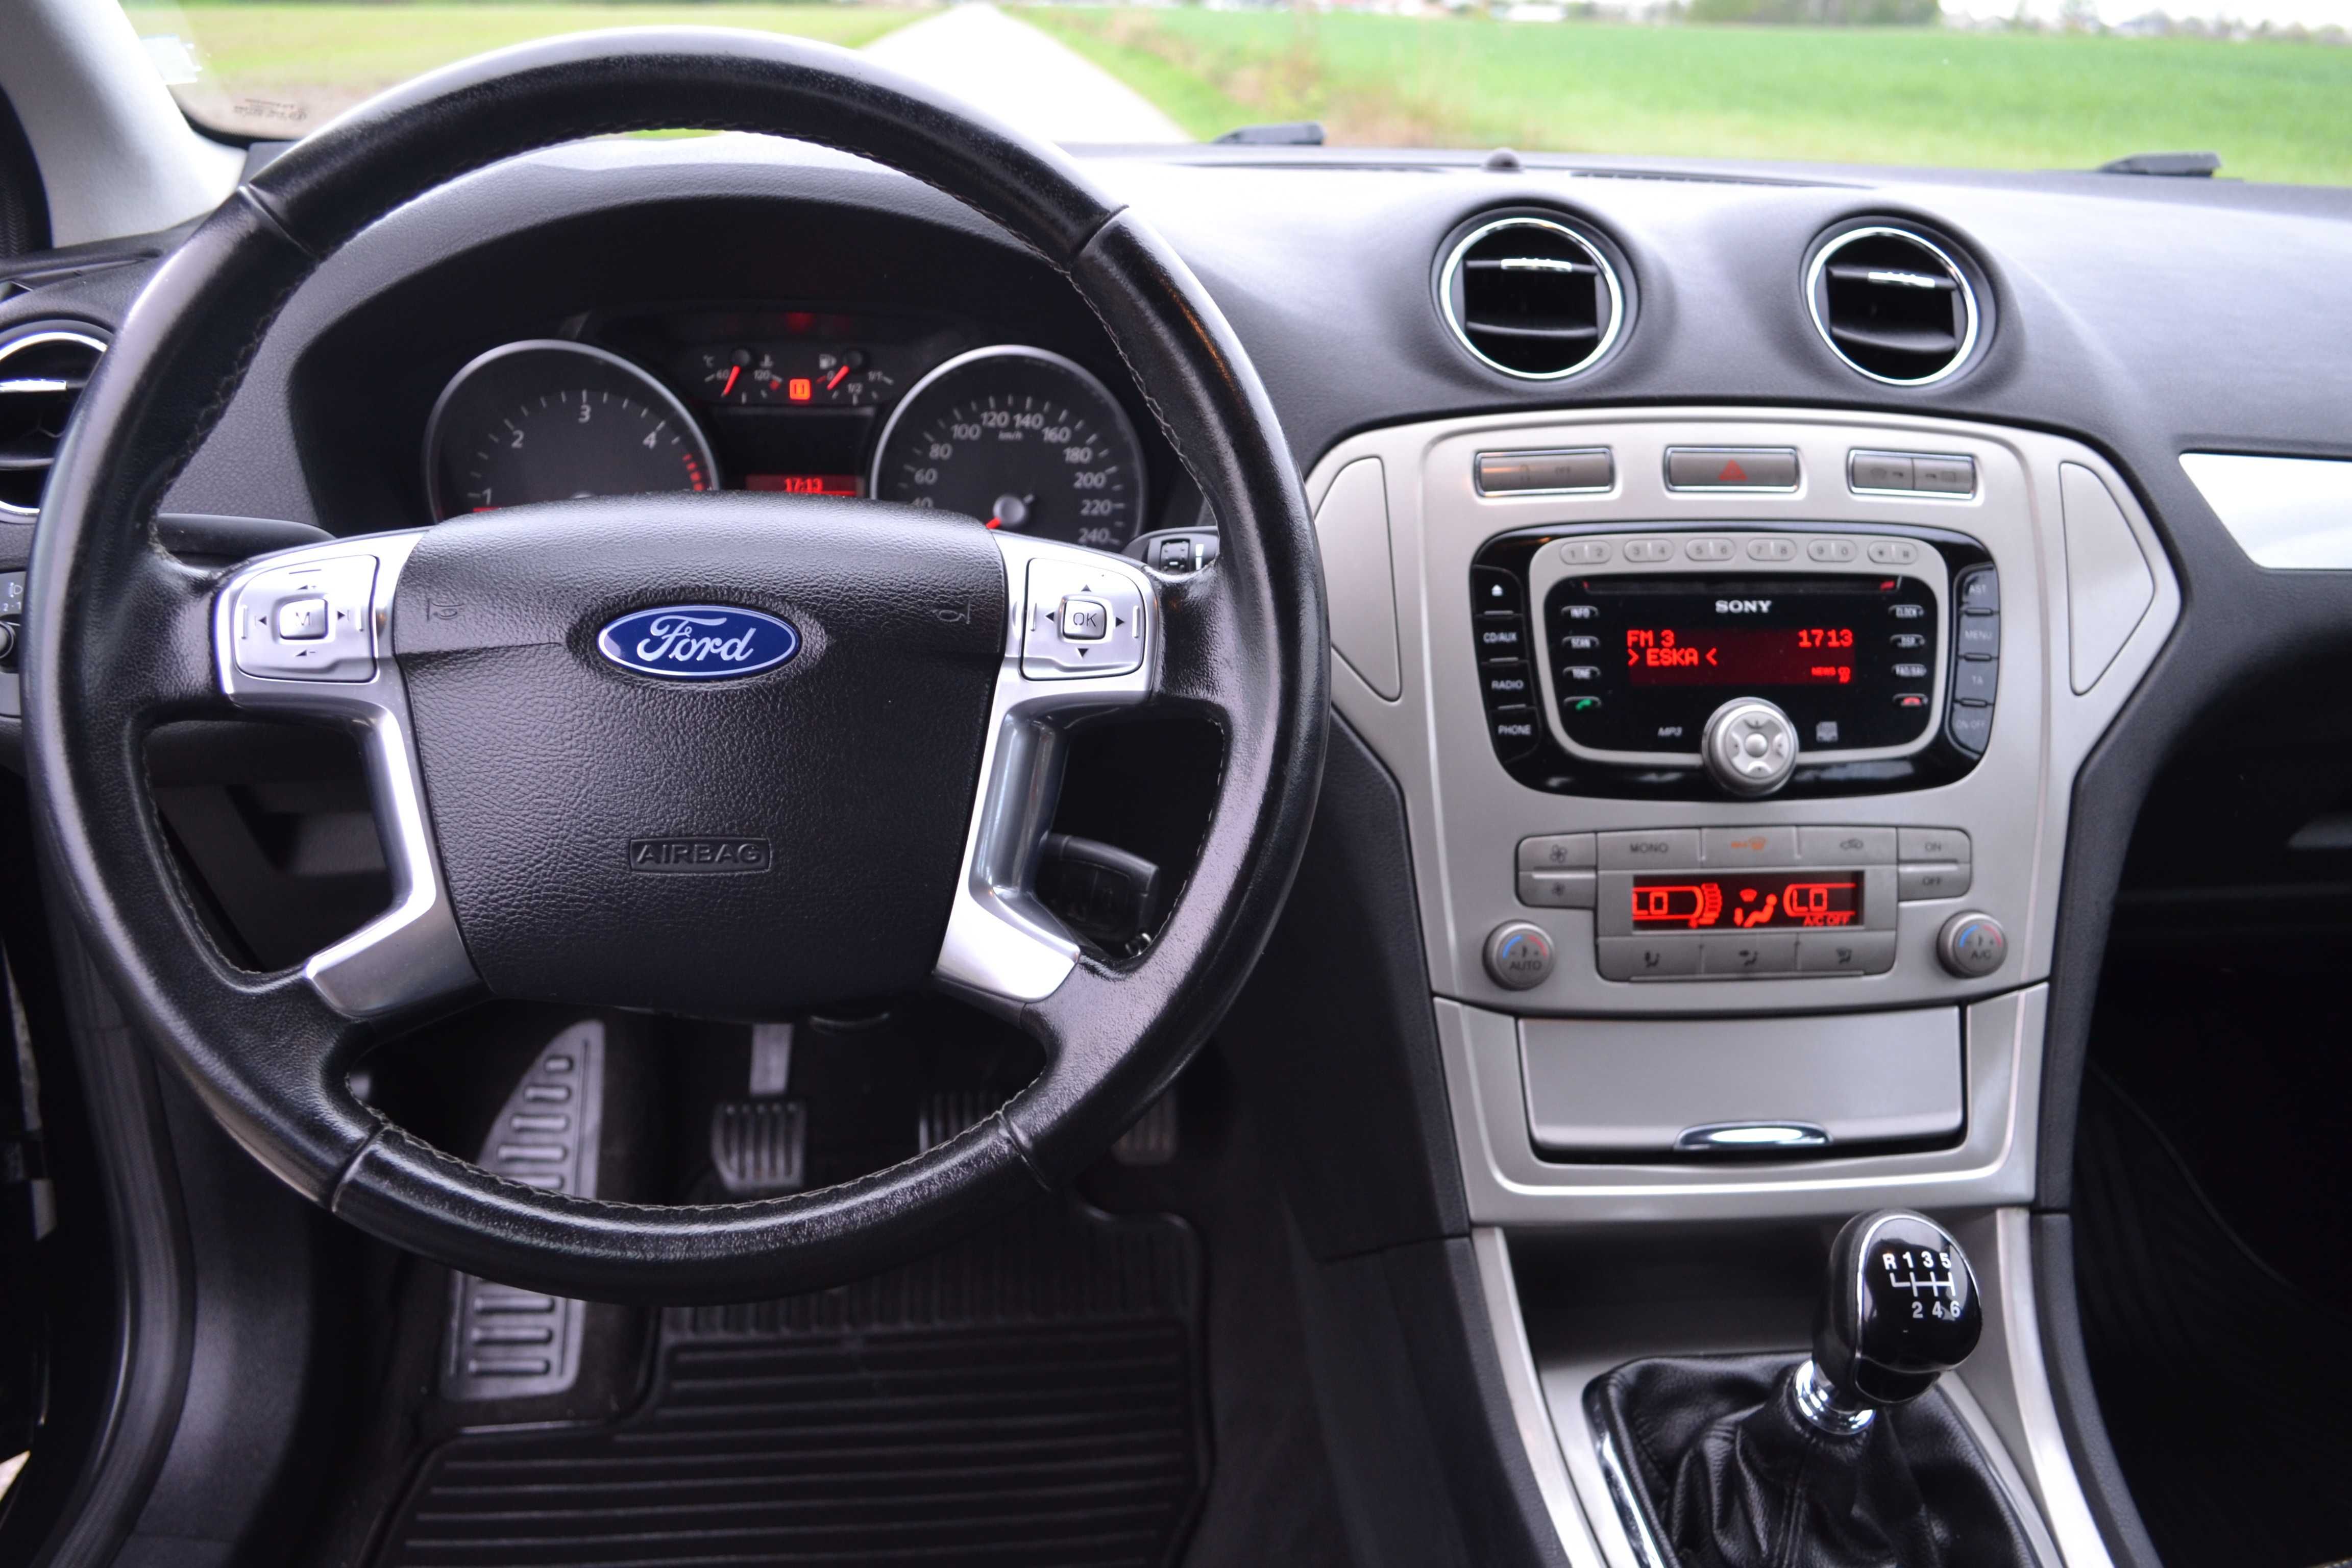 Ford Mondeo 2.0 TDCI 140 KM 6-Bieg Klimatron Alufelgi Chrom